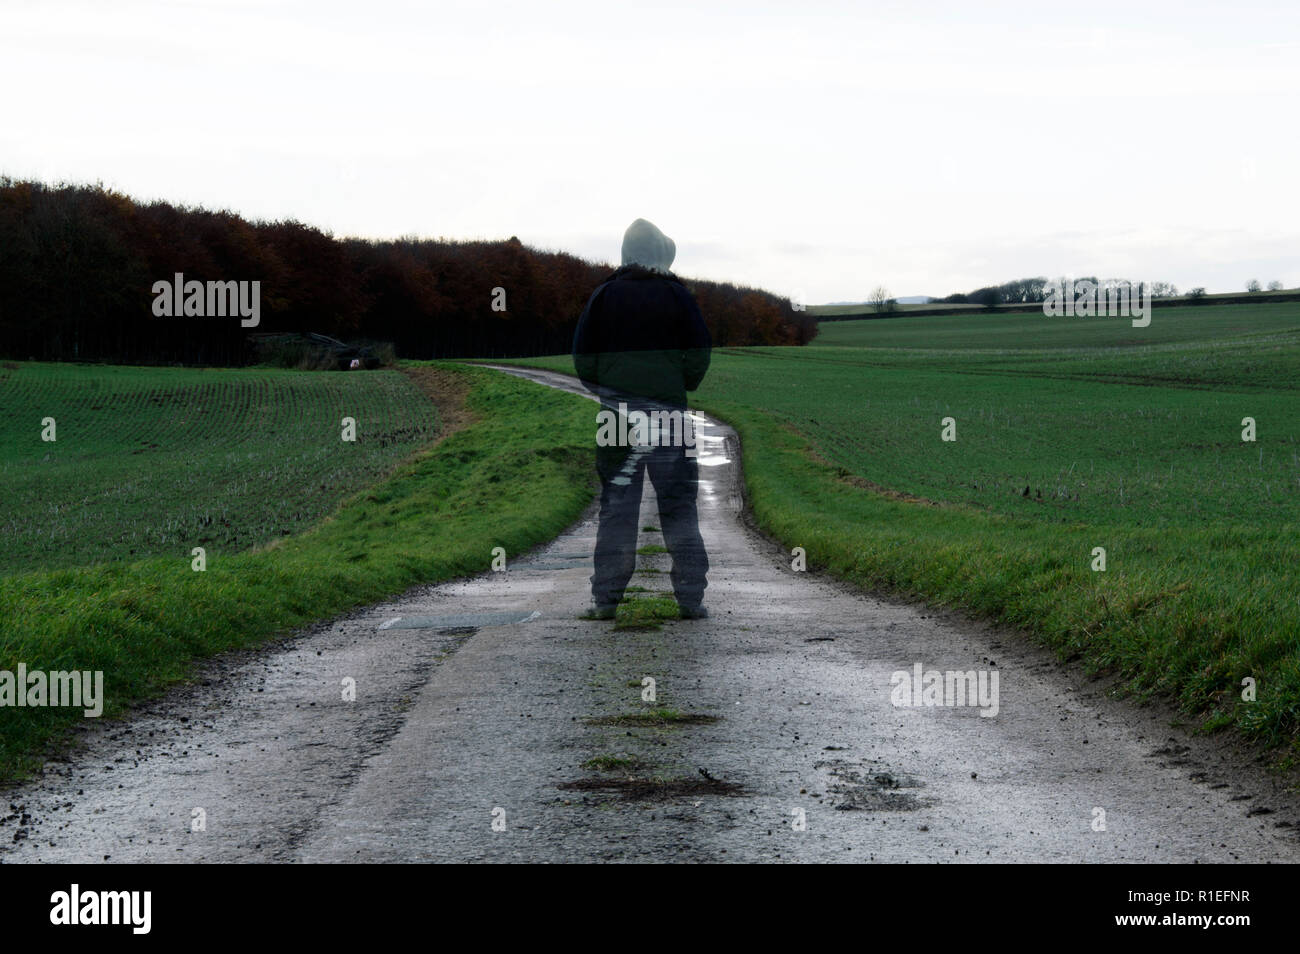 Un fantasmagórico, encapuchado transparente figura de pie sobre una ruta de la campiña inglesa en un día de invierno. Con un silenciado editar Foto de stock